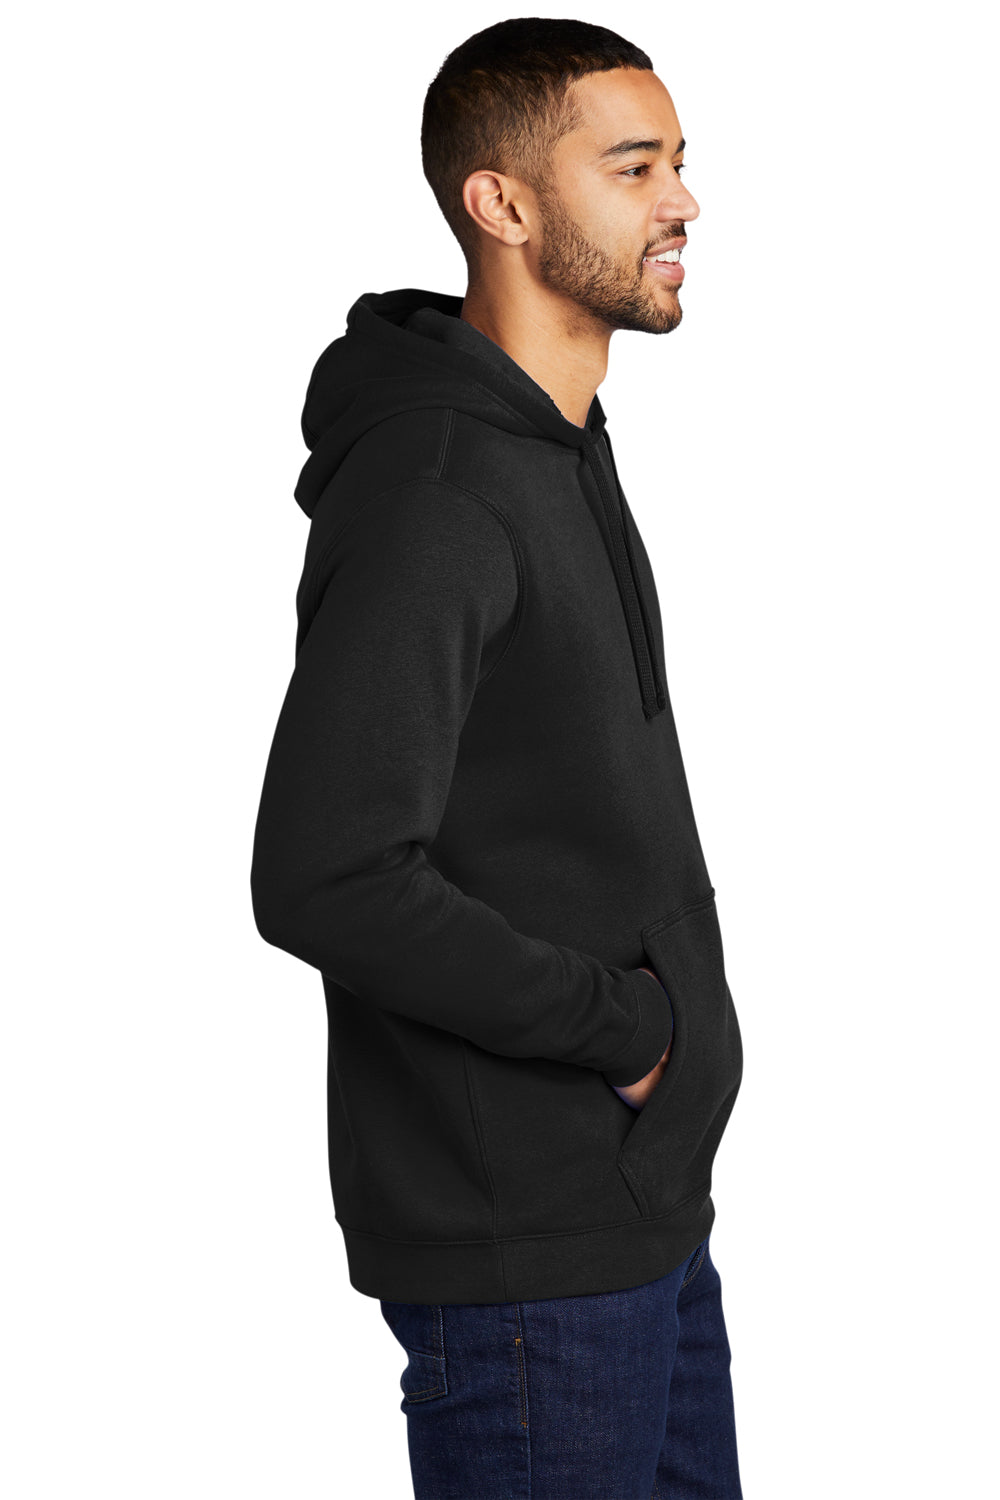 Nike CJ1611 Mens Club Fleece Hooded Sweatshirt Hoodie Black Model Side